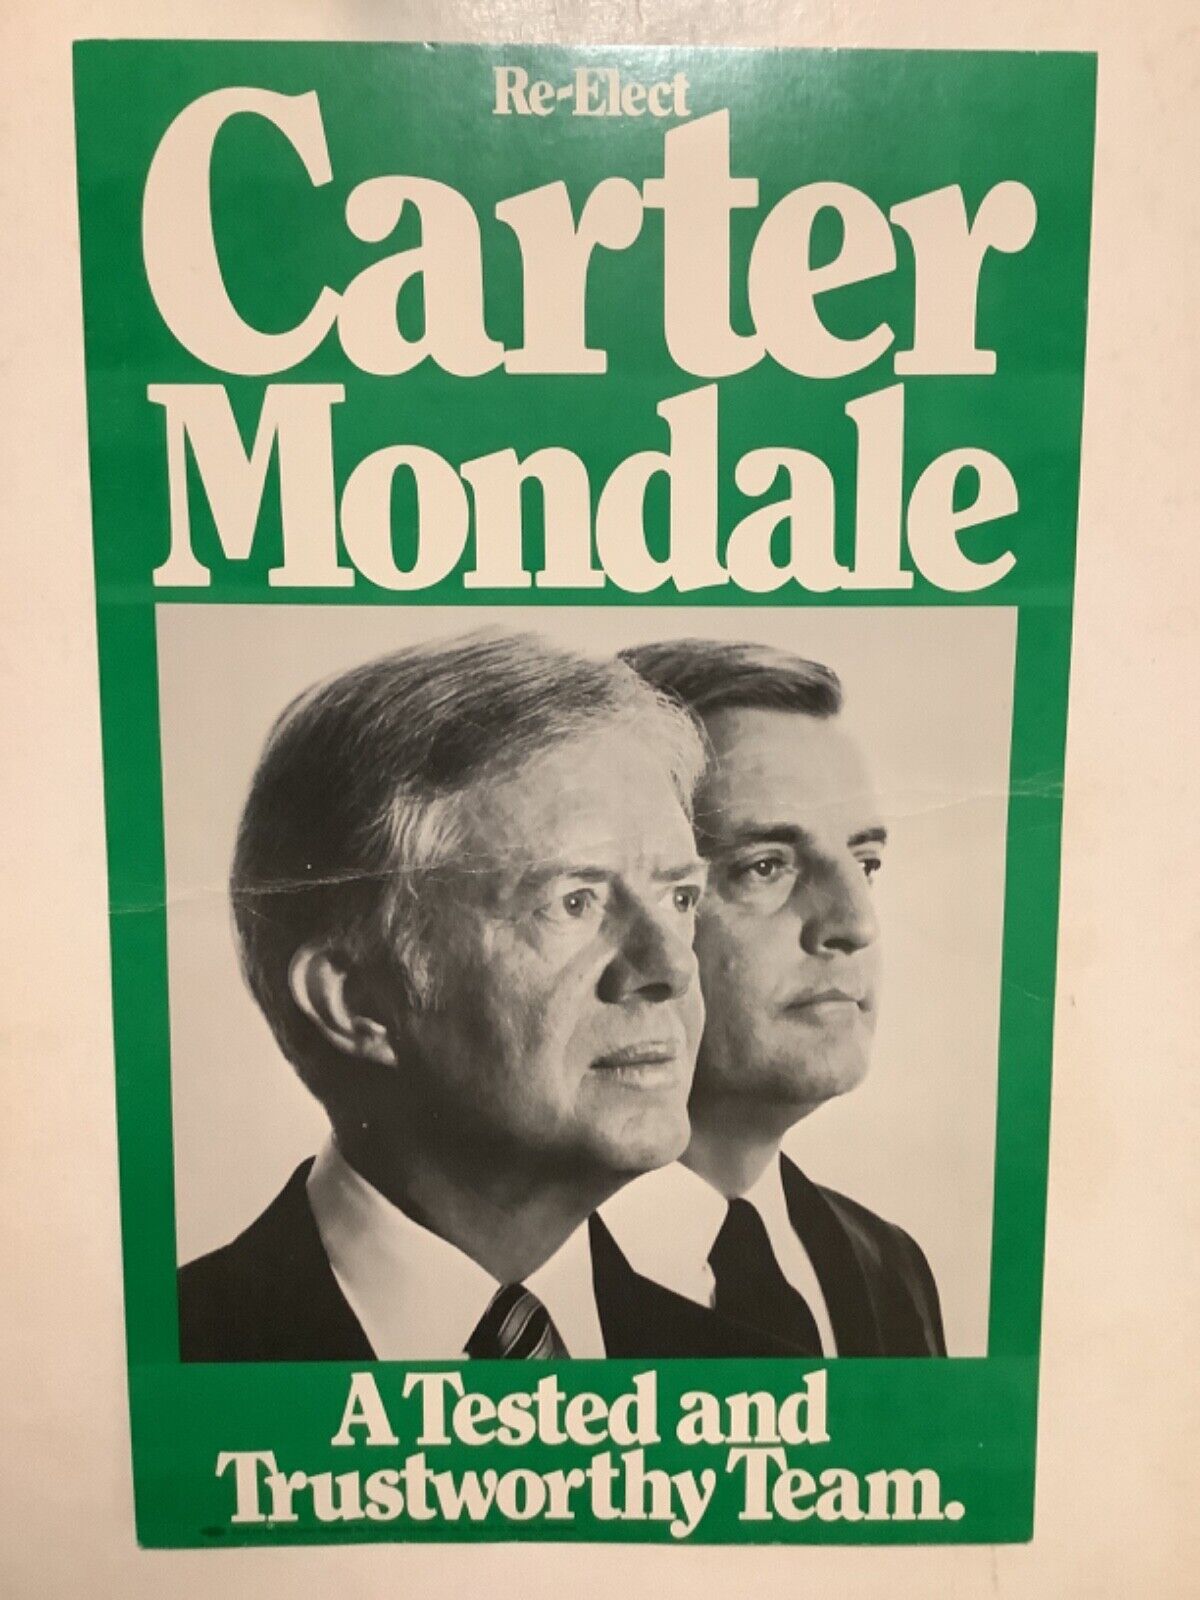 Re-Elect Carter Mondale \